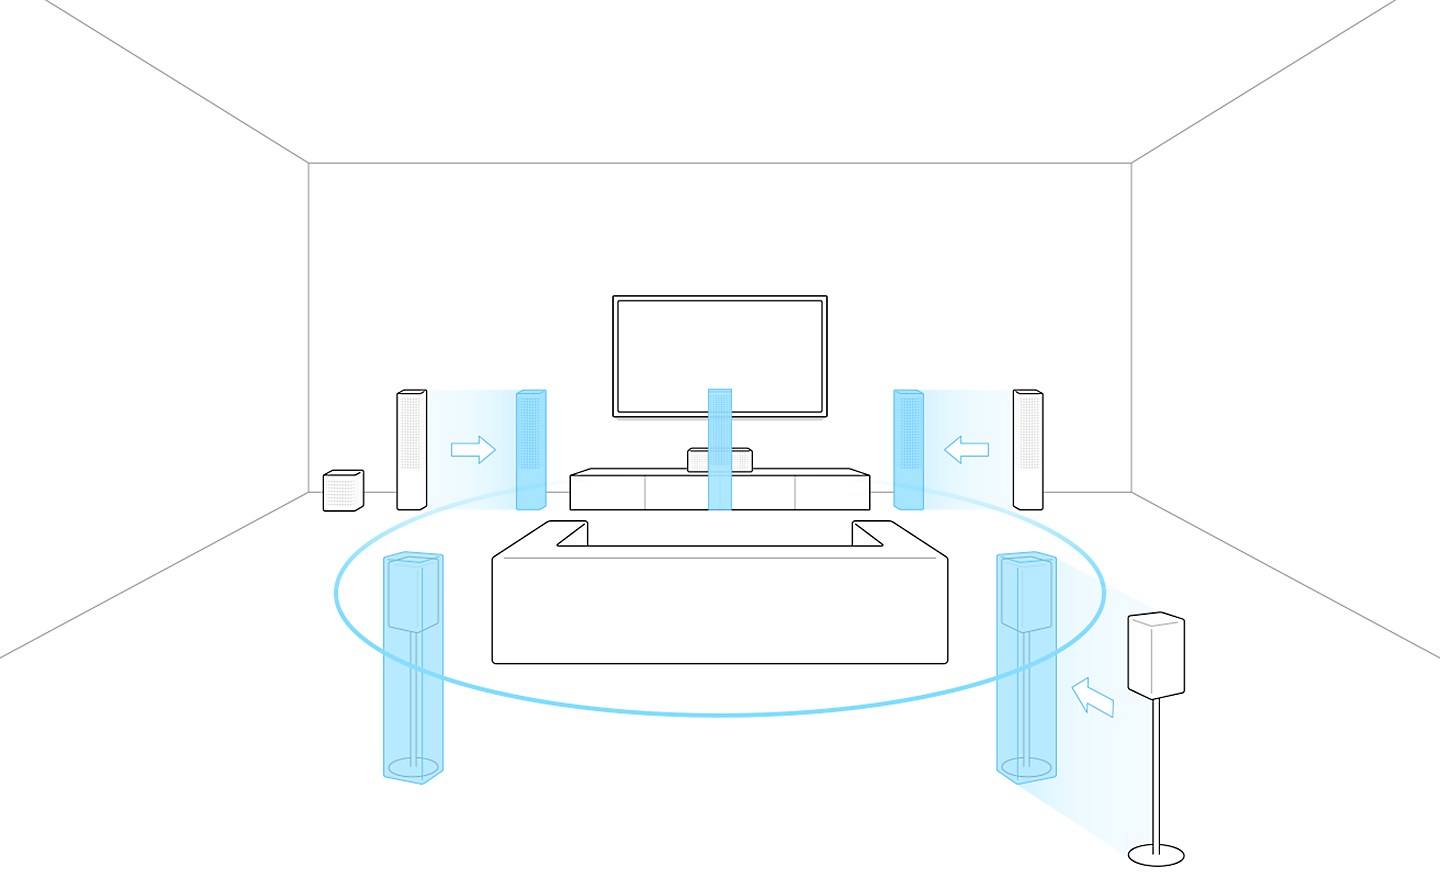 Slika sa obrisima TV-a sa kaučem i zvučnicima. Prikazi zvučnika u plavoj boji na različitim položajima ukazuju na kretanje